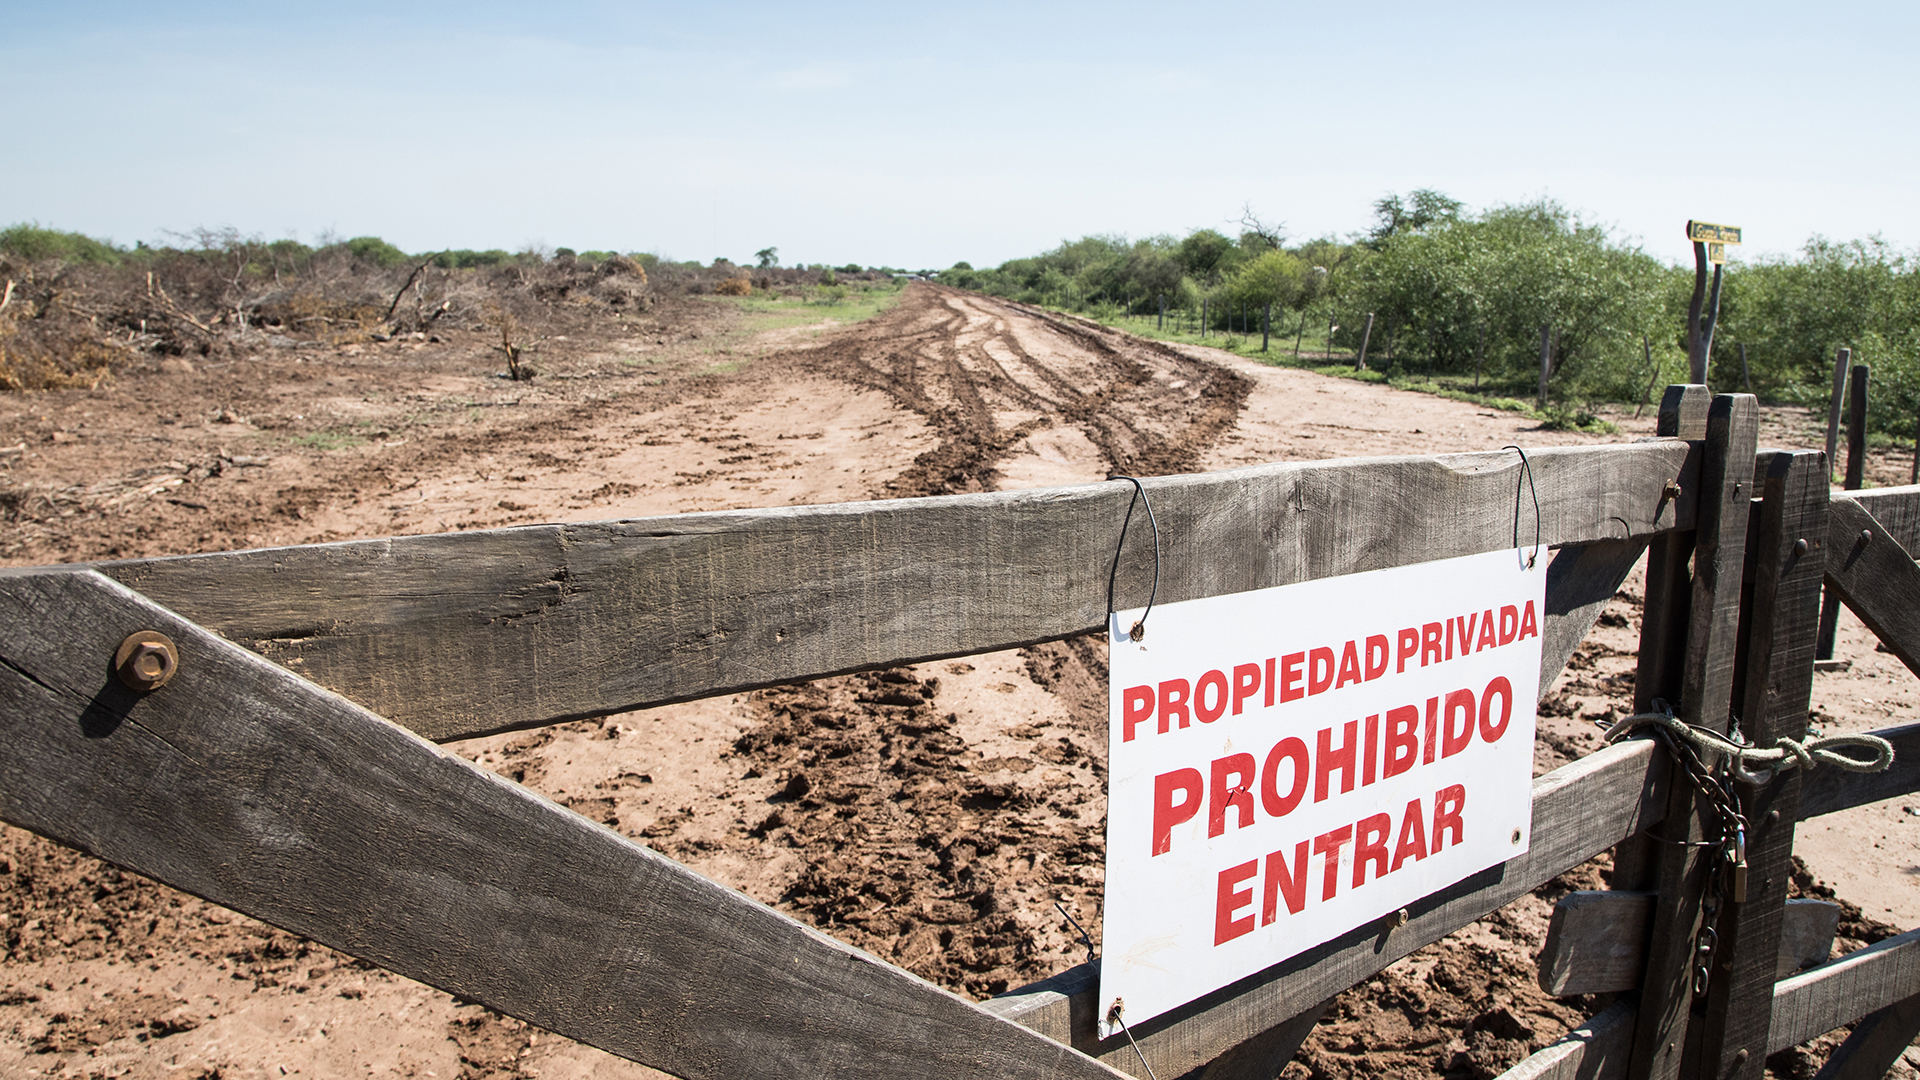 Eingang zu einer Rinderranch in Paraguay